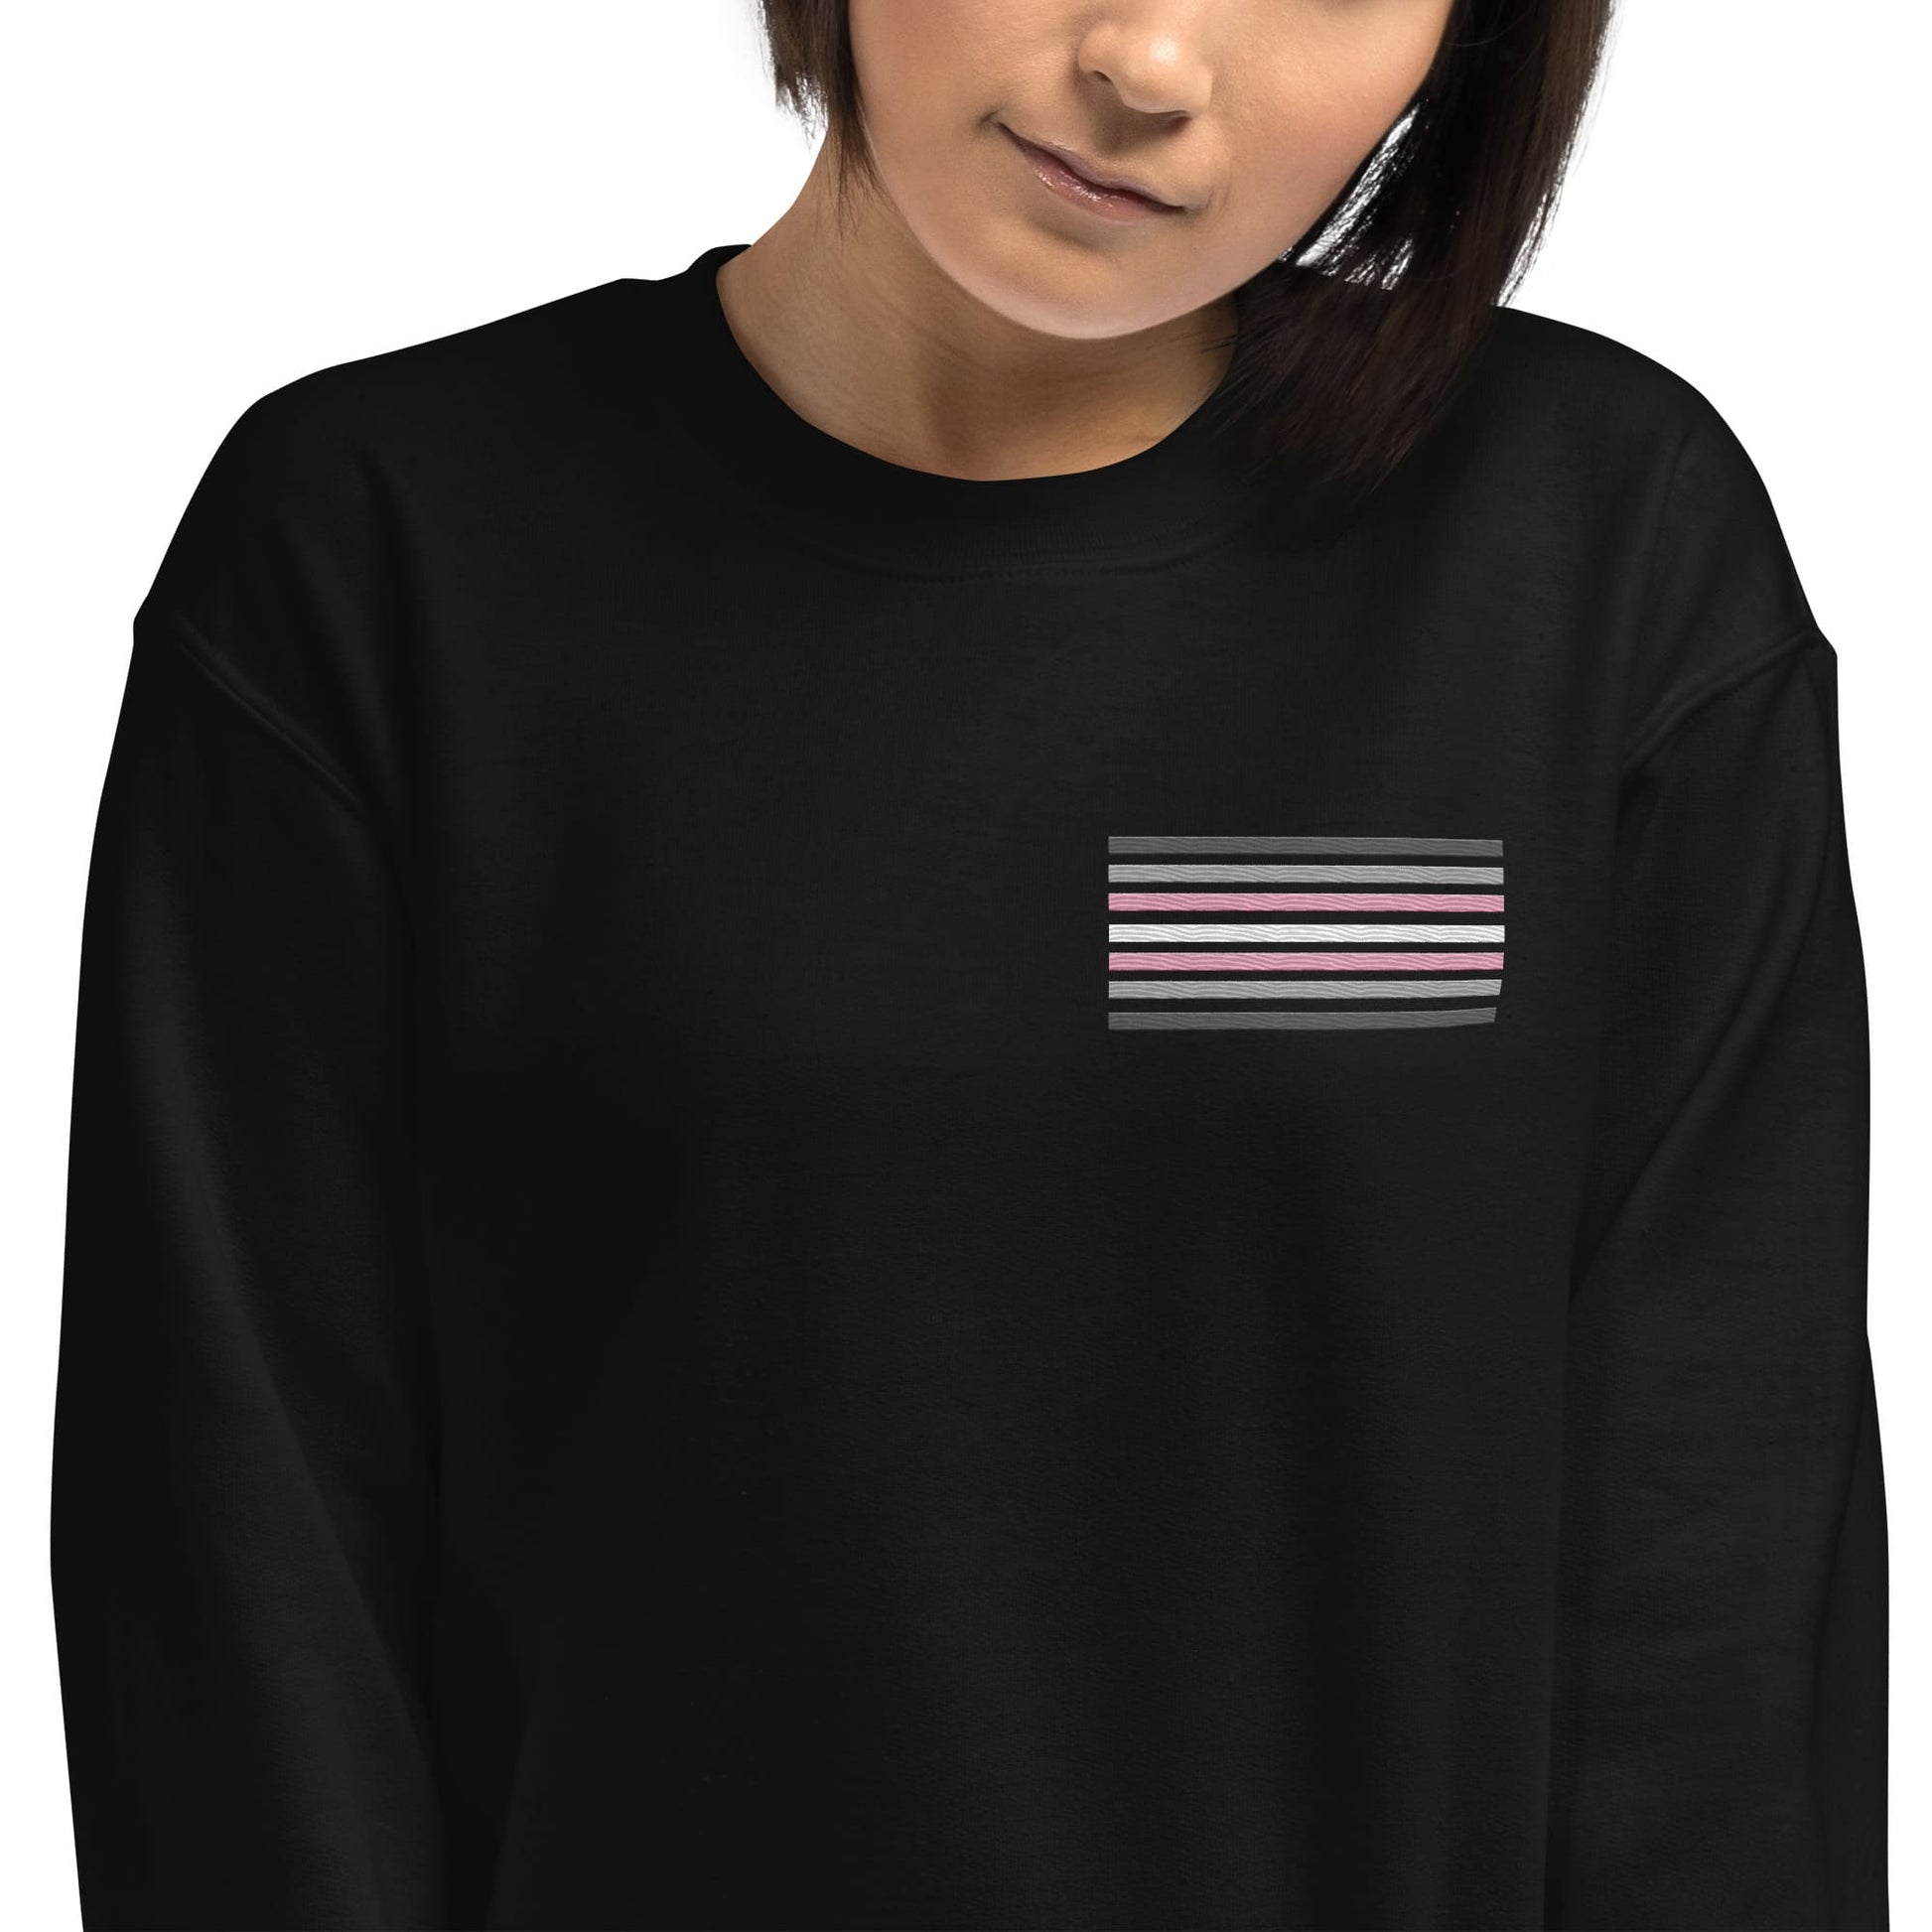 demigirl sweatshirt, subtle demigender pride flag embroidered pocket design sweater, model 1